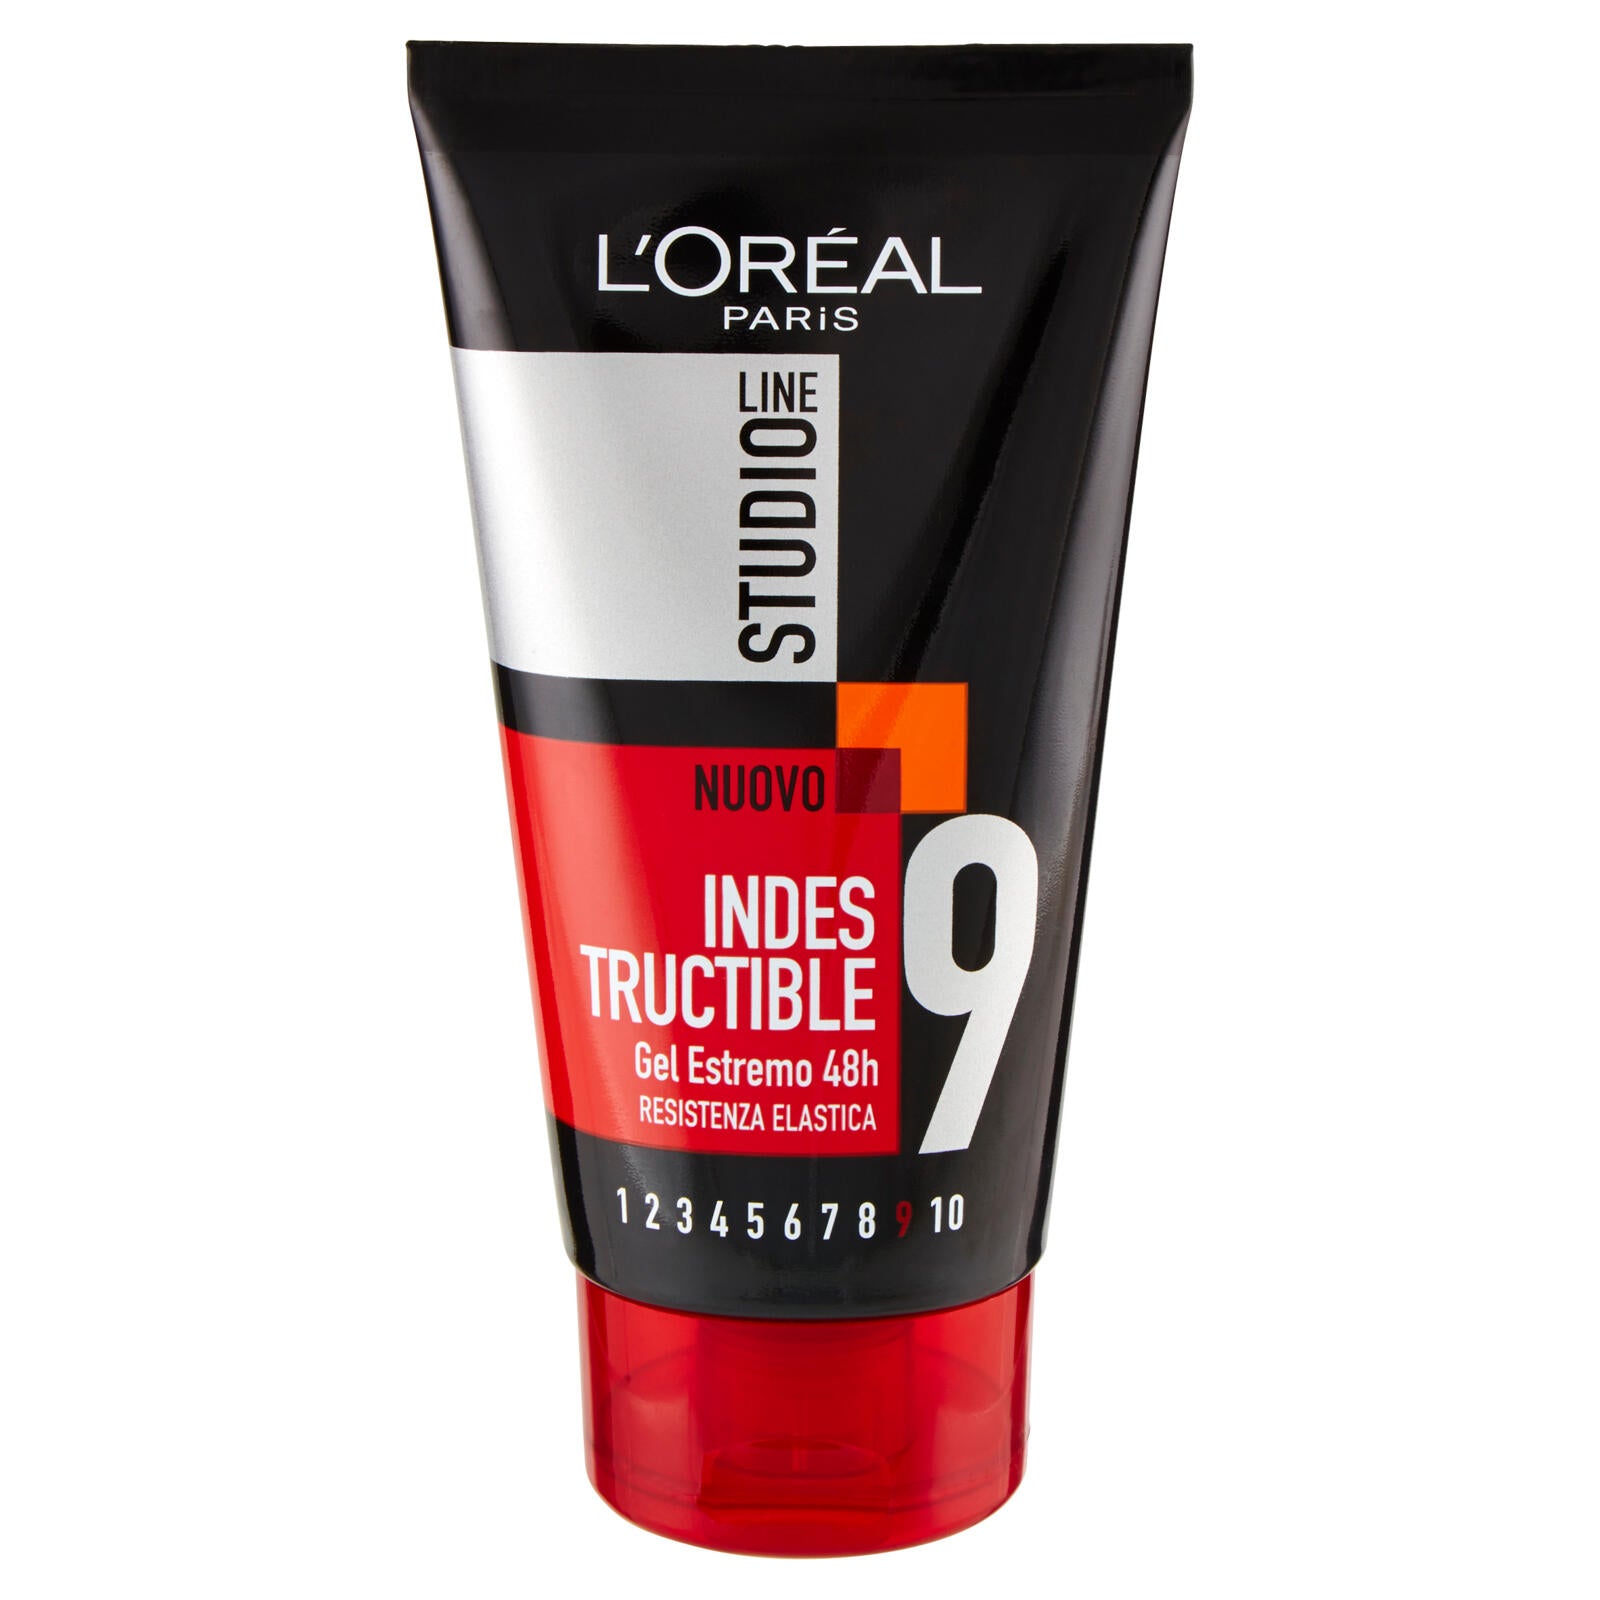 L'Oréal Paris Studio Line Indestructible 9 Gel estremo 48h 150 ml